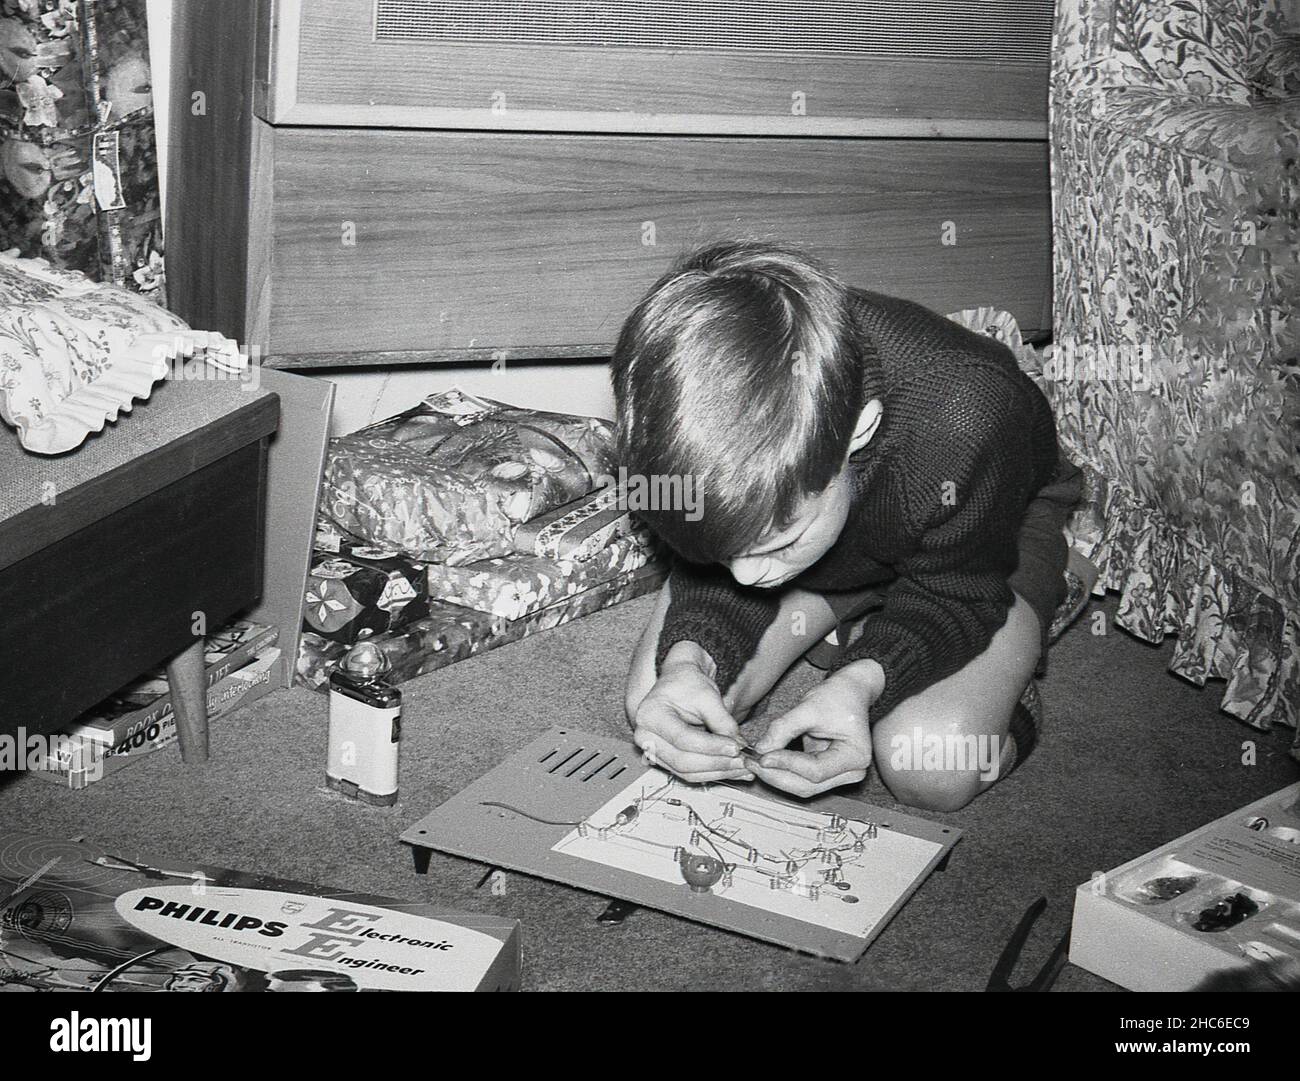 1960s, historisch, in einem Raum, ein kleiner Junge, der auf dem Boden kniet und mit einem weihnachtsgeschenk spielt, eine Platine aus einem Philips Electronic Engineer Kit, England, Großbritannien. Boxed „Young Engineer“-Kits waren eine beliebte pädagogische und unterhaltsame Aktivität für junge Jungen in dieser Zeit. Stockfoto